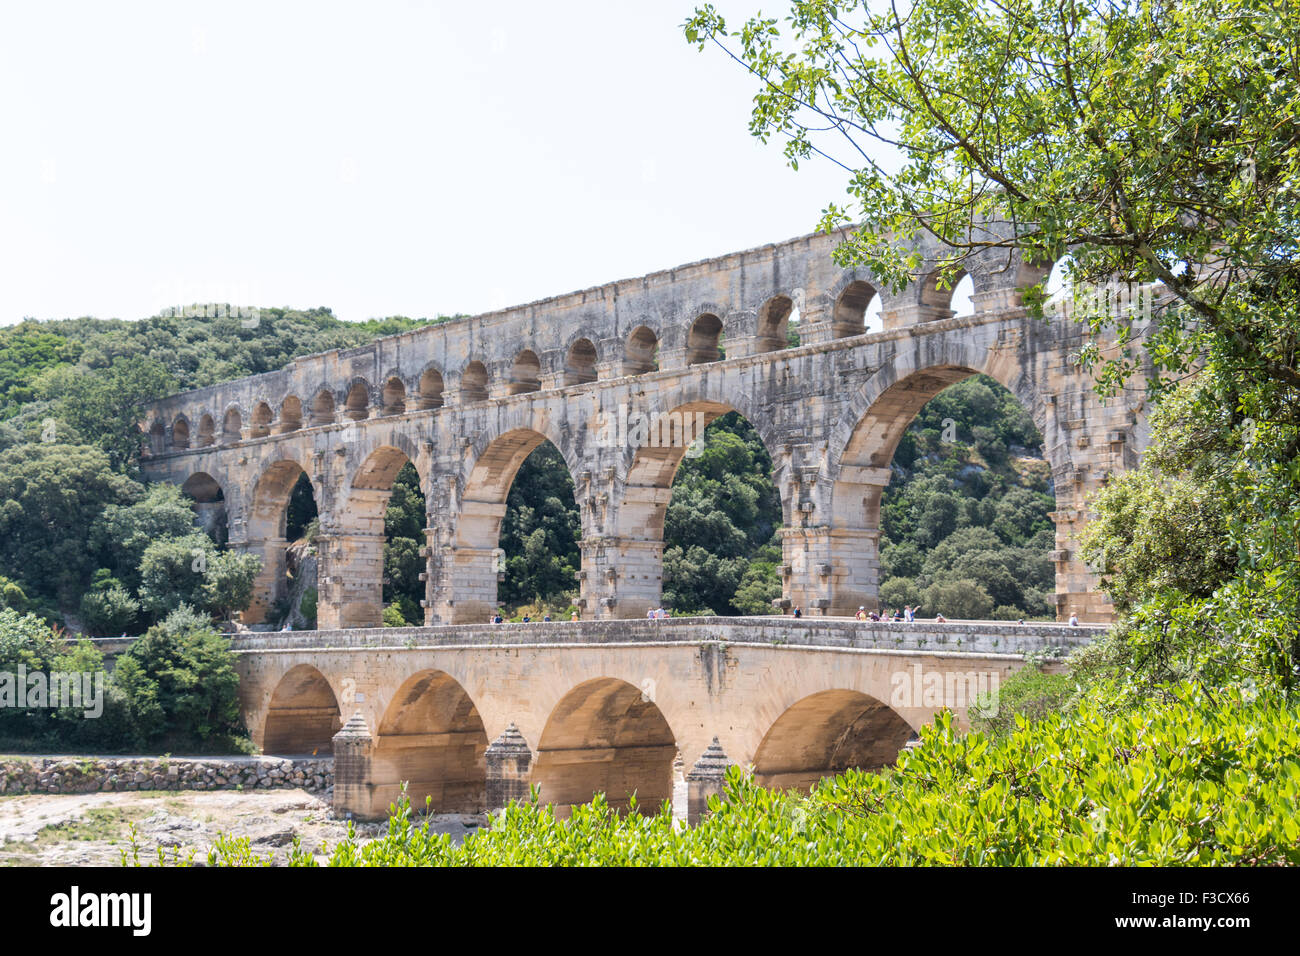 Pont du Gard, antike römische Aquädukt in Frankreich - Blick vom rechten Ufer Stockfoto